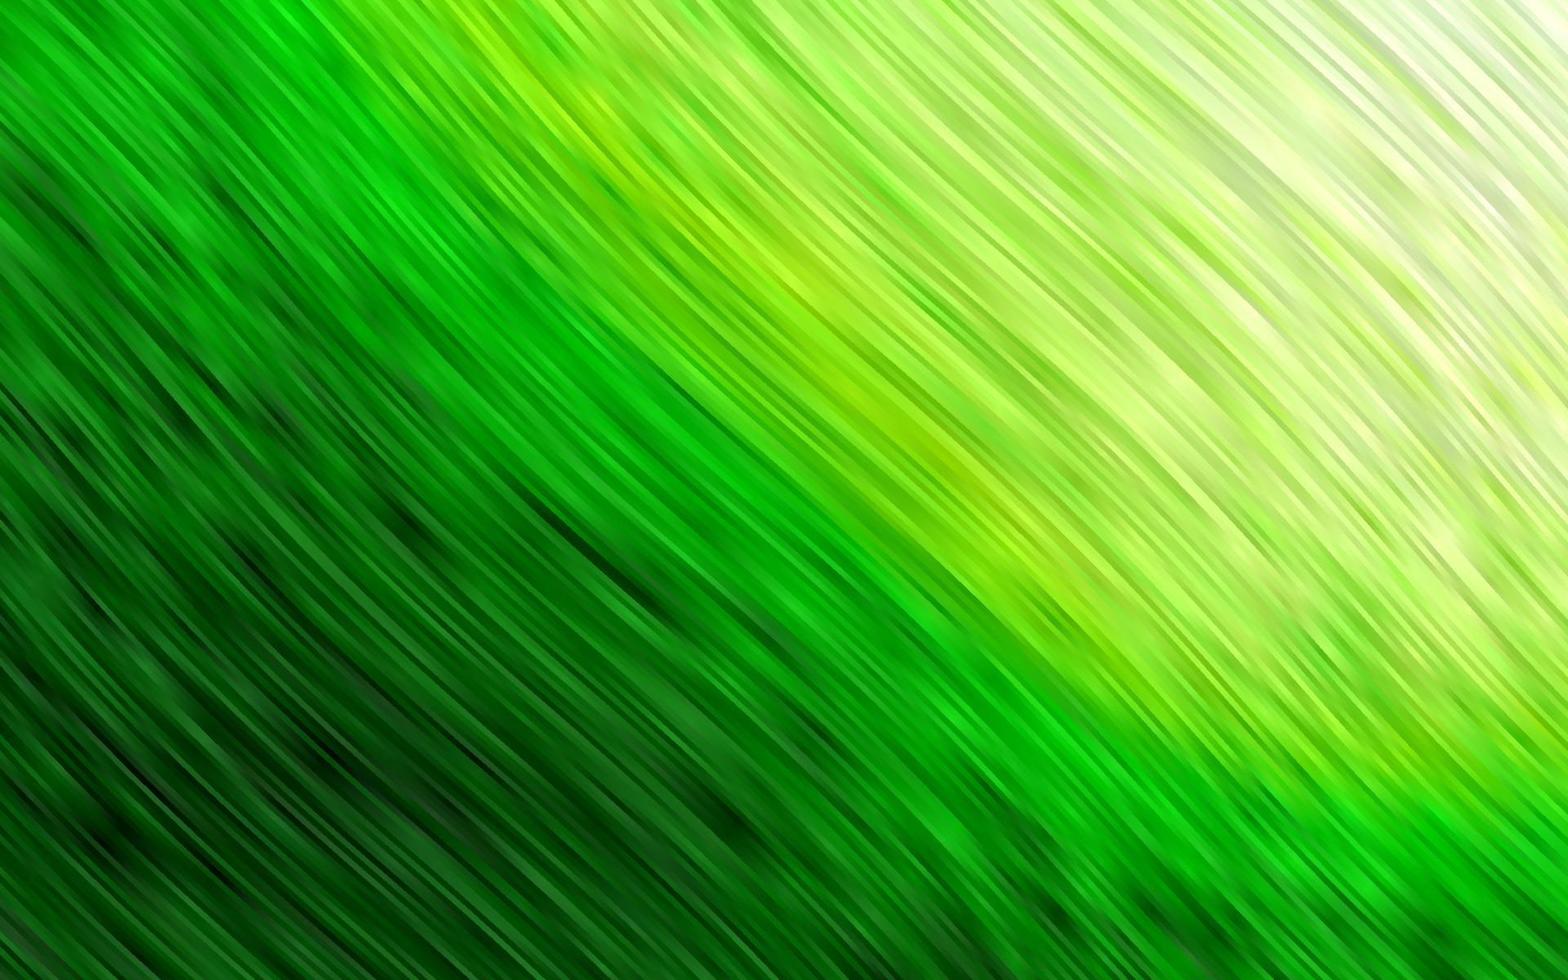 modello vettoriale verde chiaro con linee, ovali.